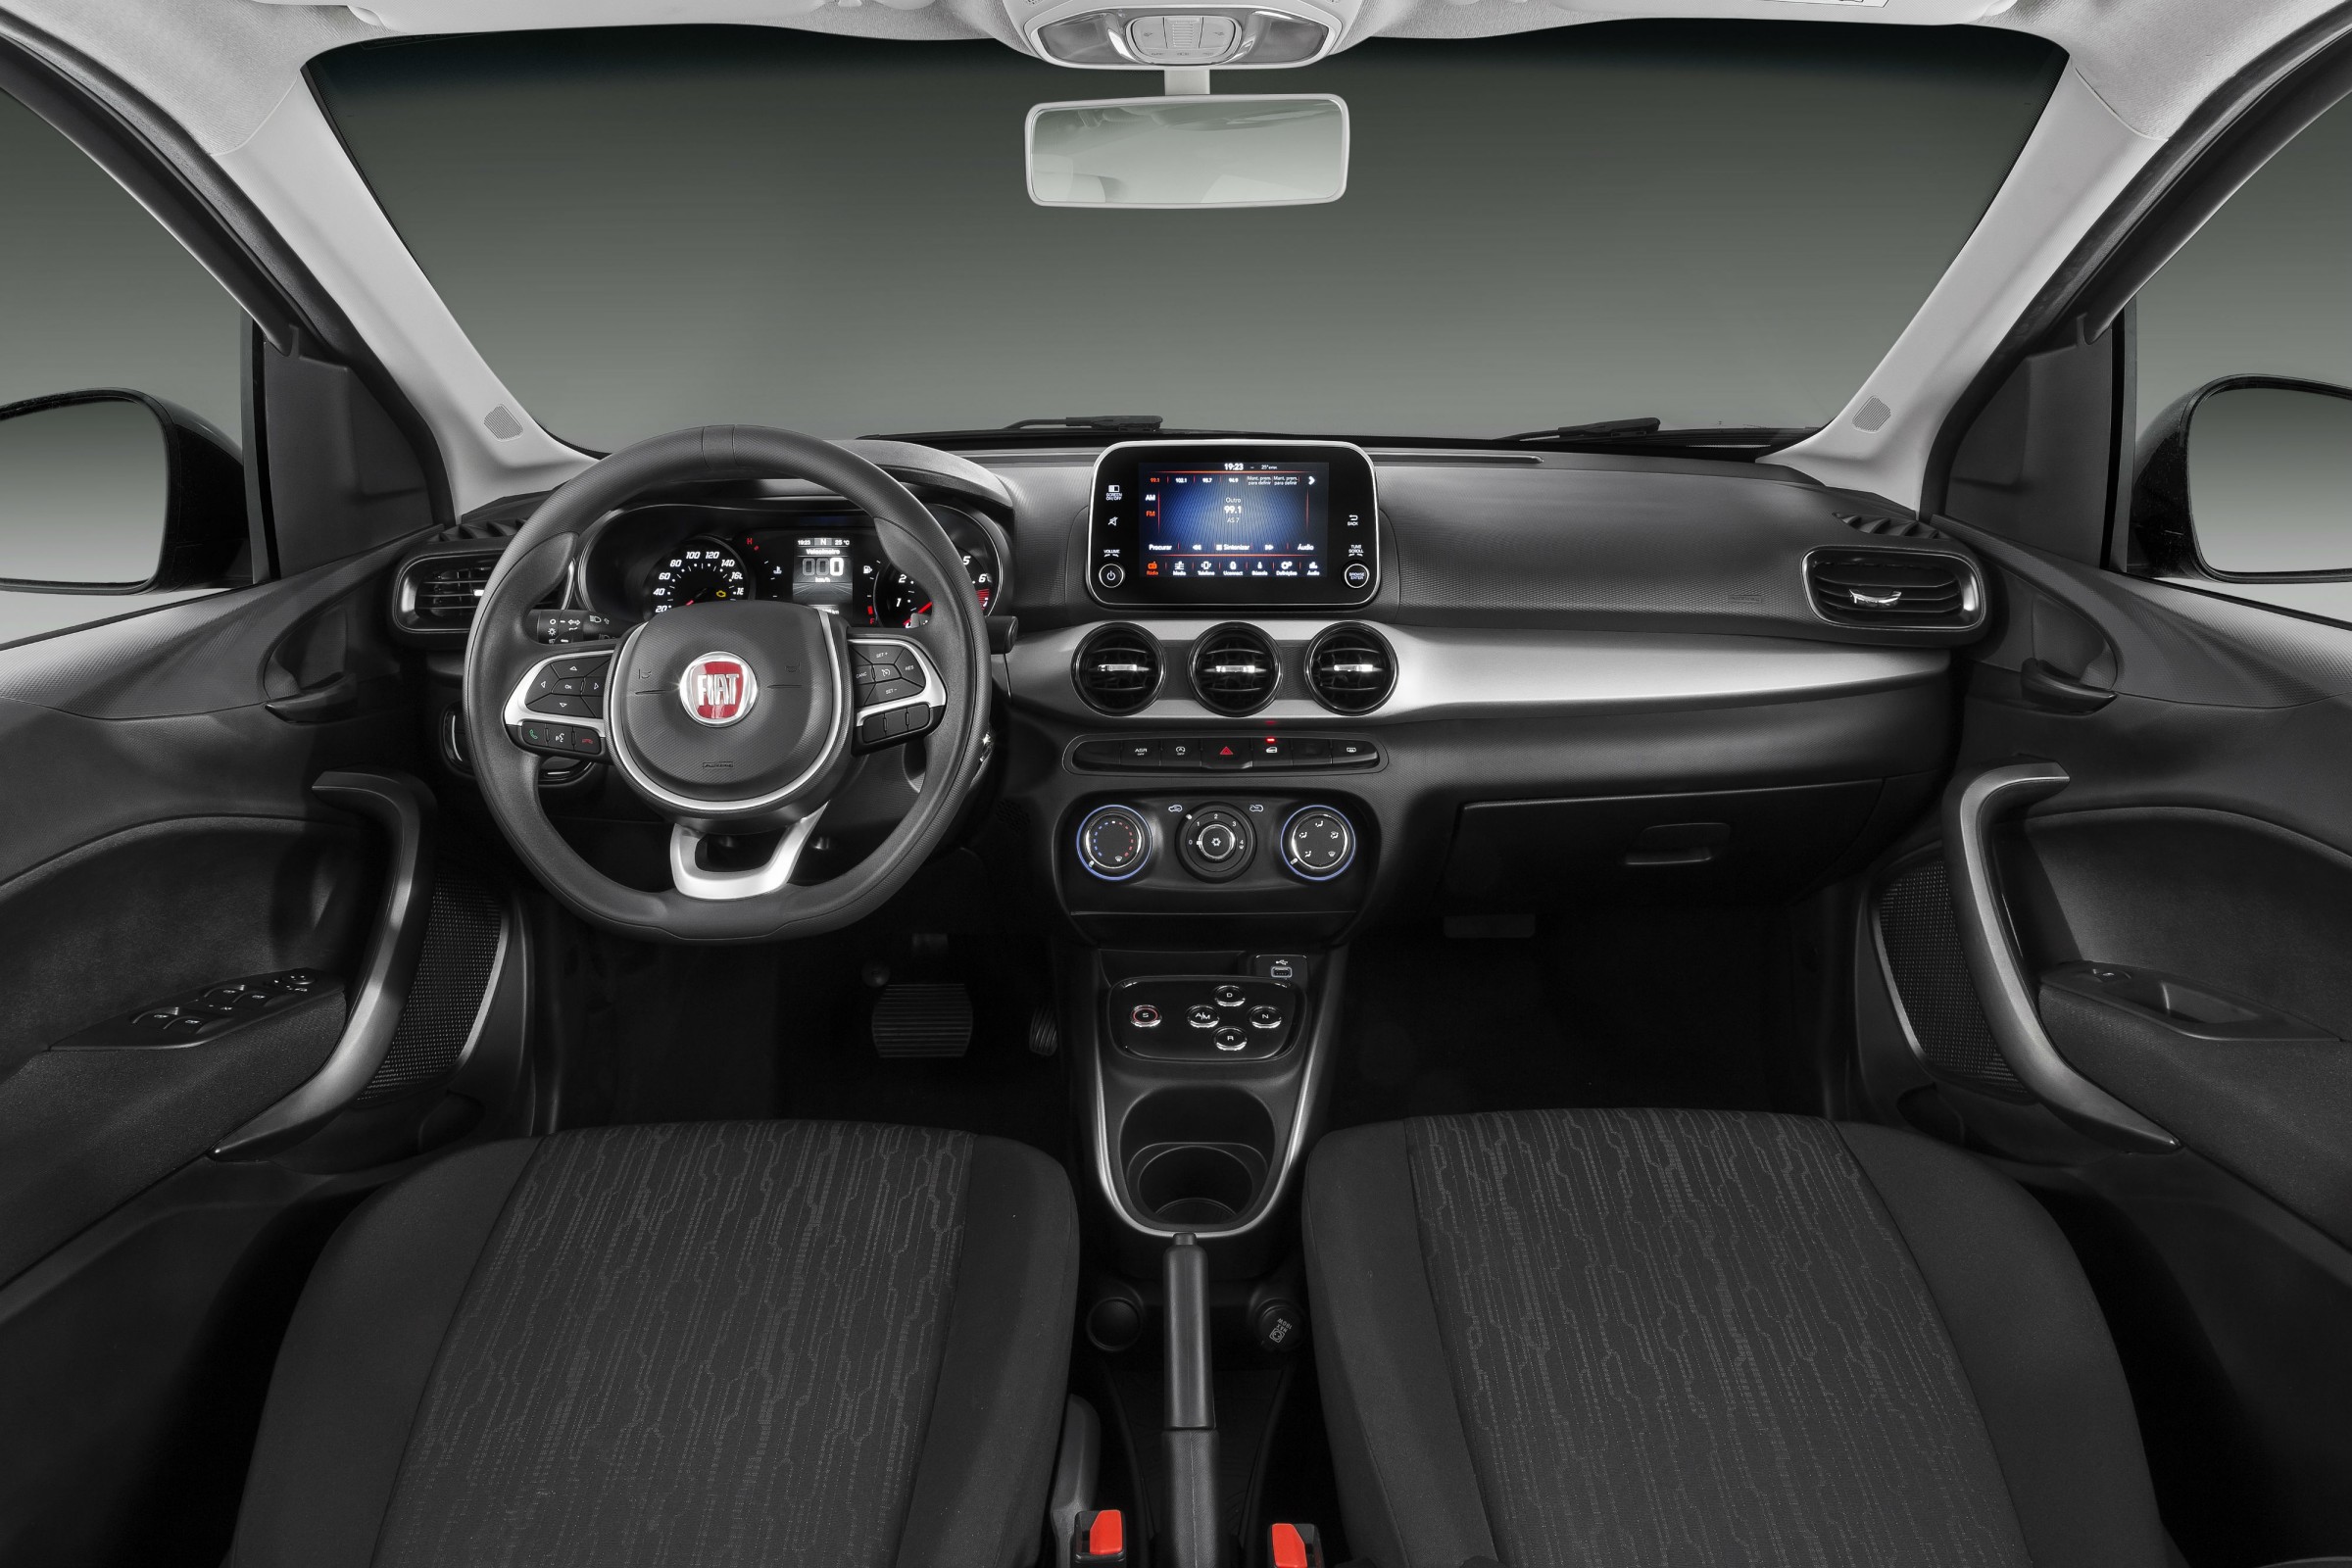  Fiat Argo 2018 Drive 1.3 GSR            